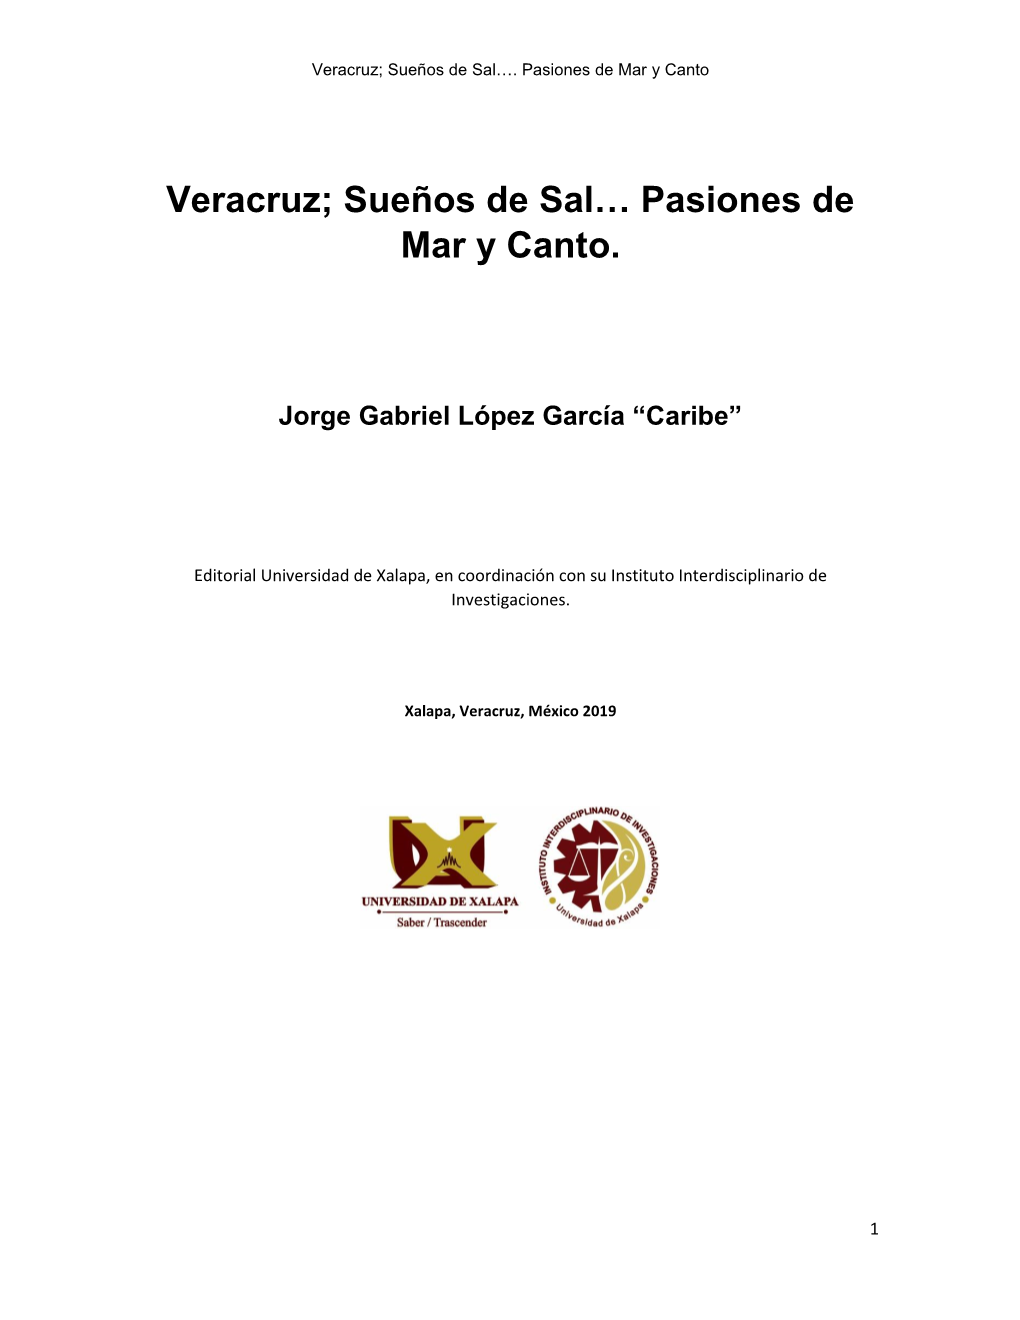 Veracruz: Sueños De Sal; Pasiones De Mar Y Canto. Autor